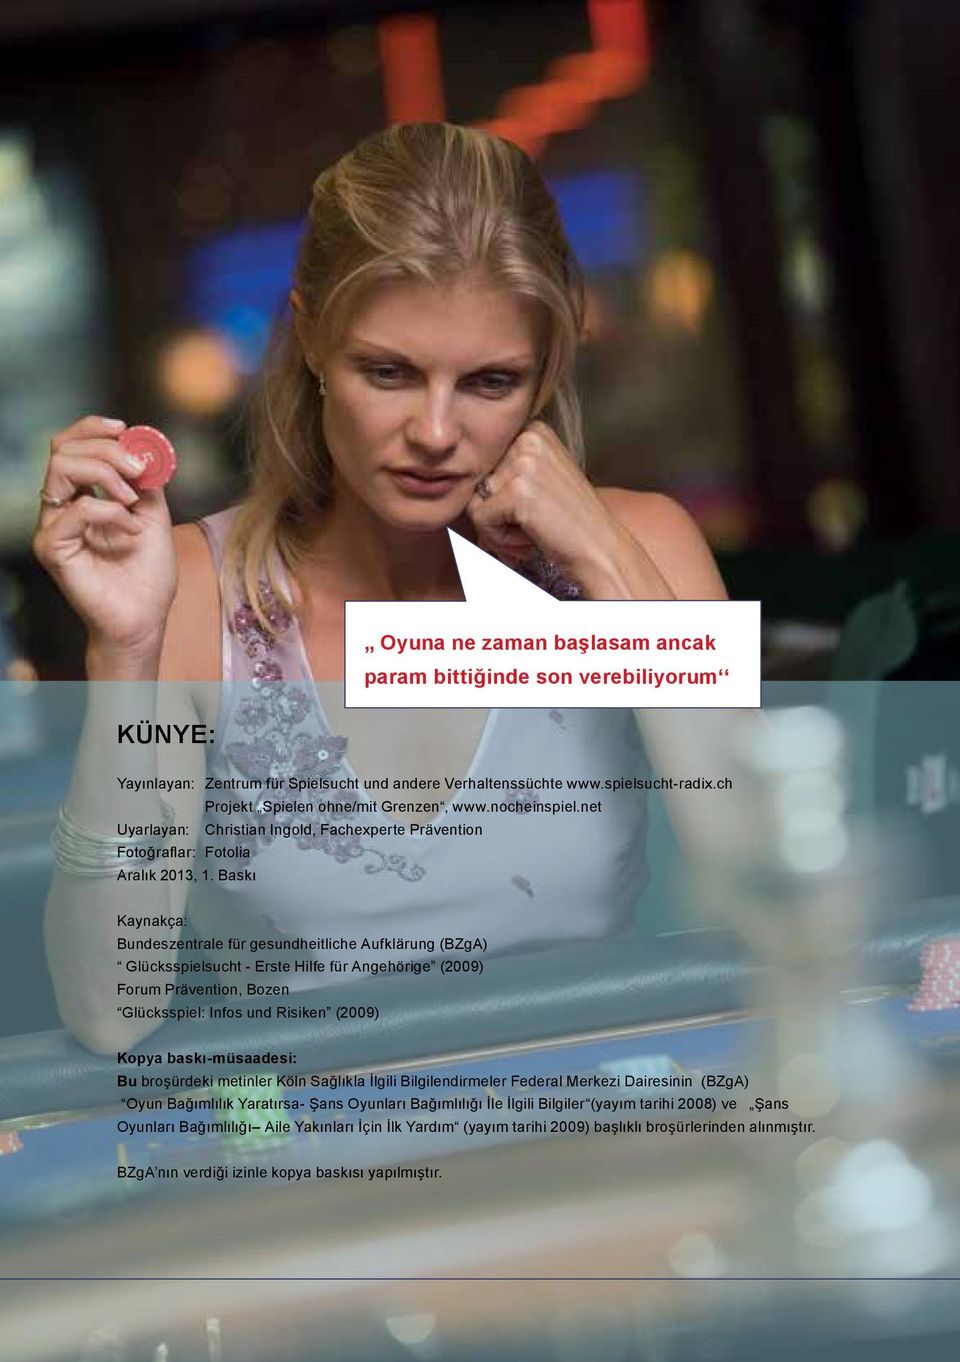 Baskı Kaynakça: Bundeszentrale für gesundheitliche Aufklärung (BZgA) Glücksspielsucht - Erste Hilfe für Angehörige (2009) Forum Prävention, Bozen Glücksspiel: Infos und Risiken (2009) Kopya